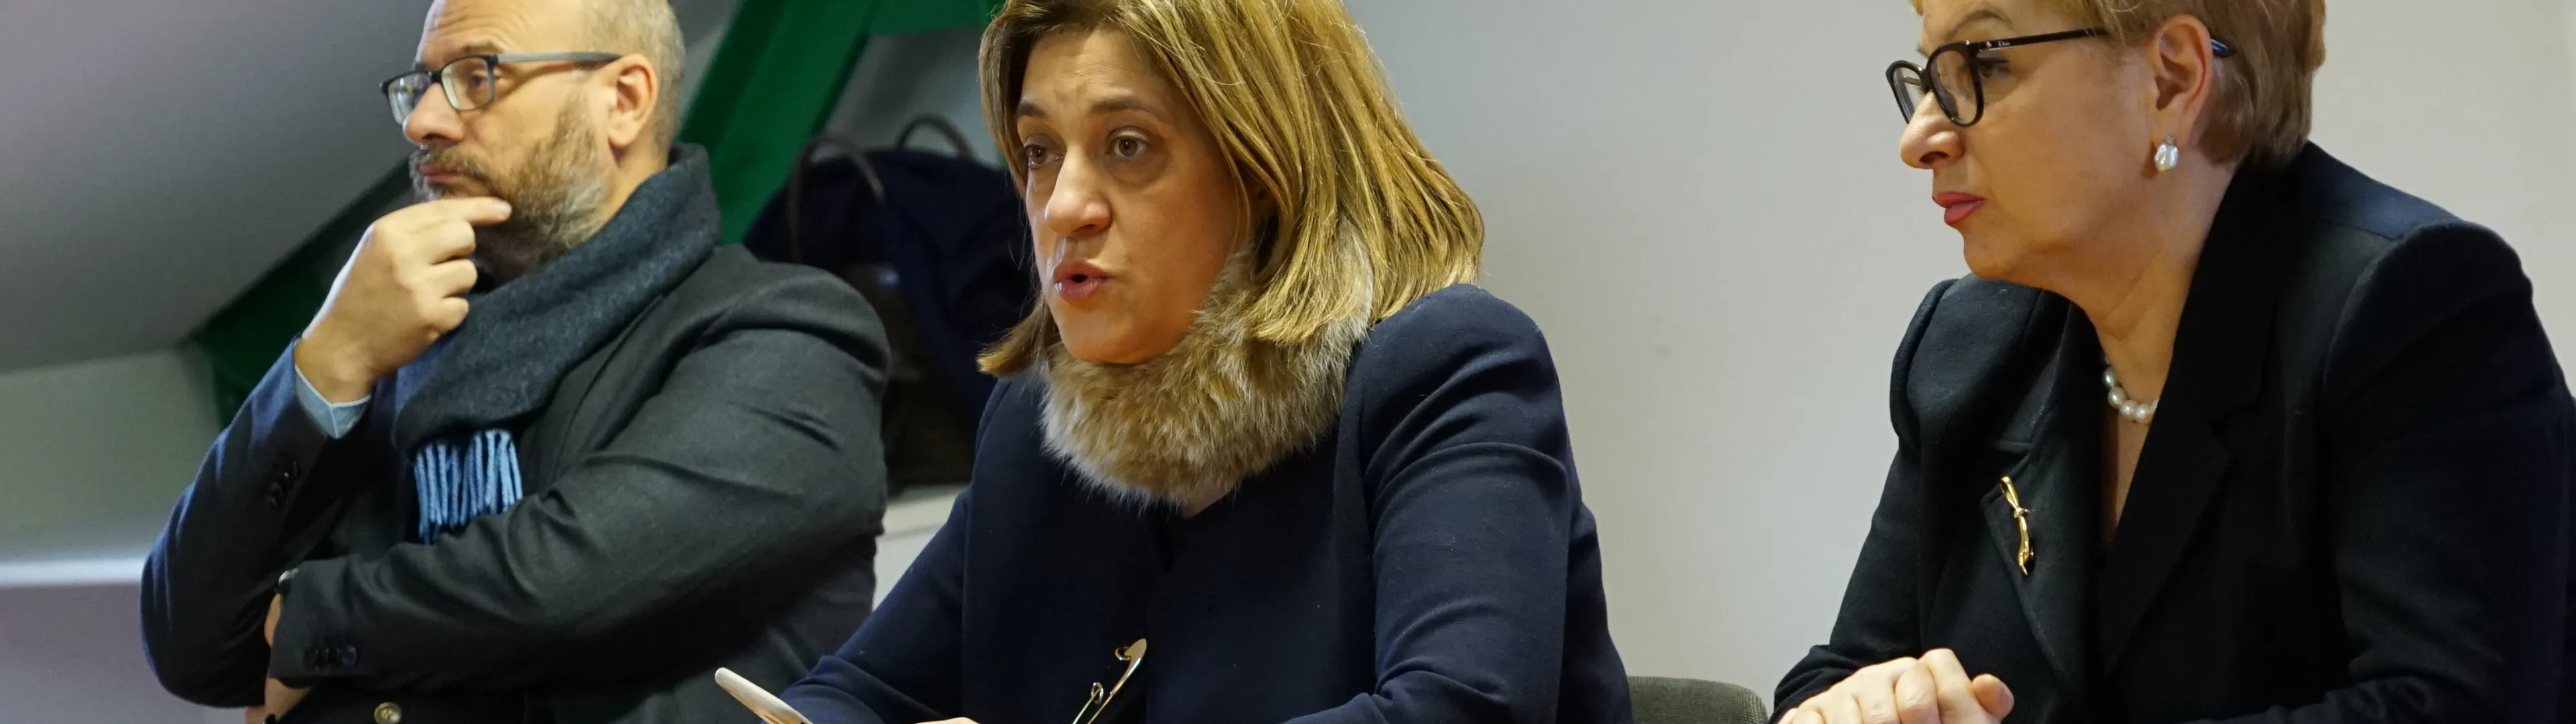 La presidente Marini presenta il nuovo Commissario Straordinario